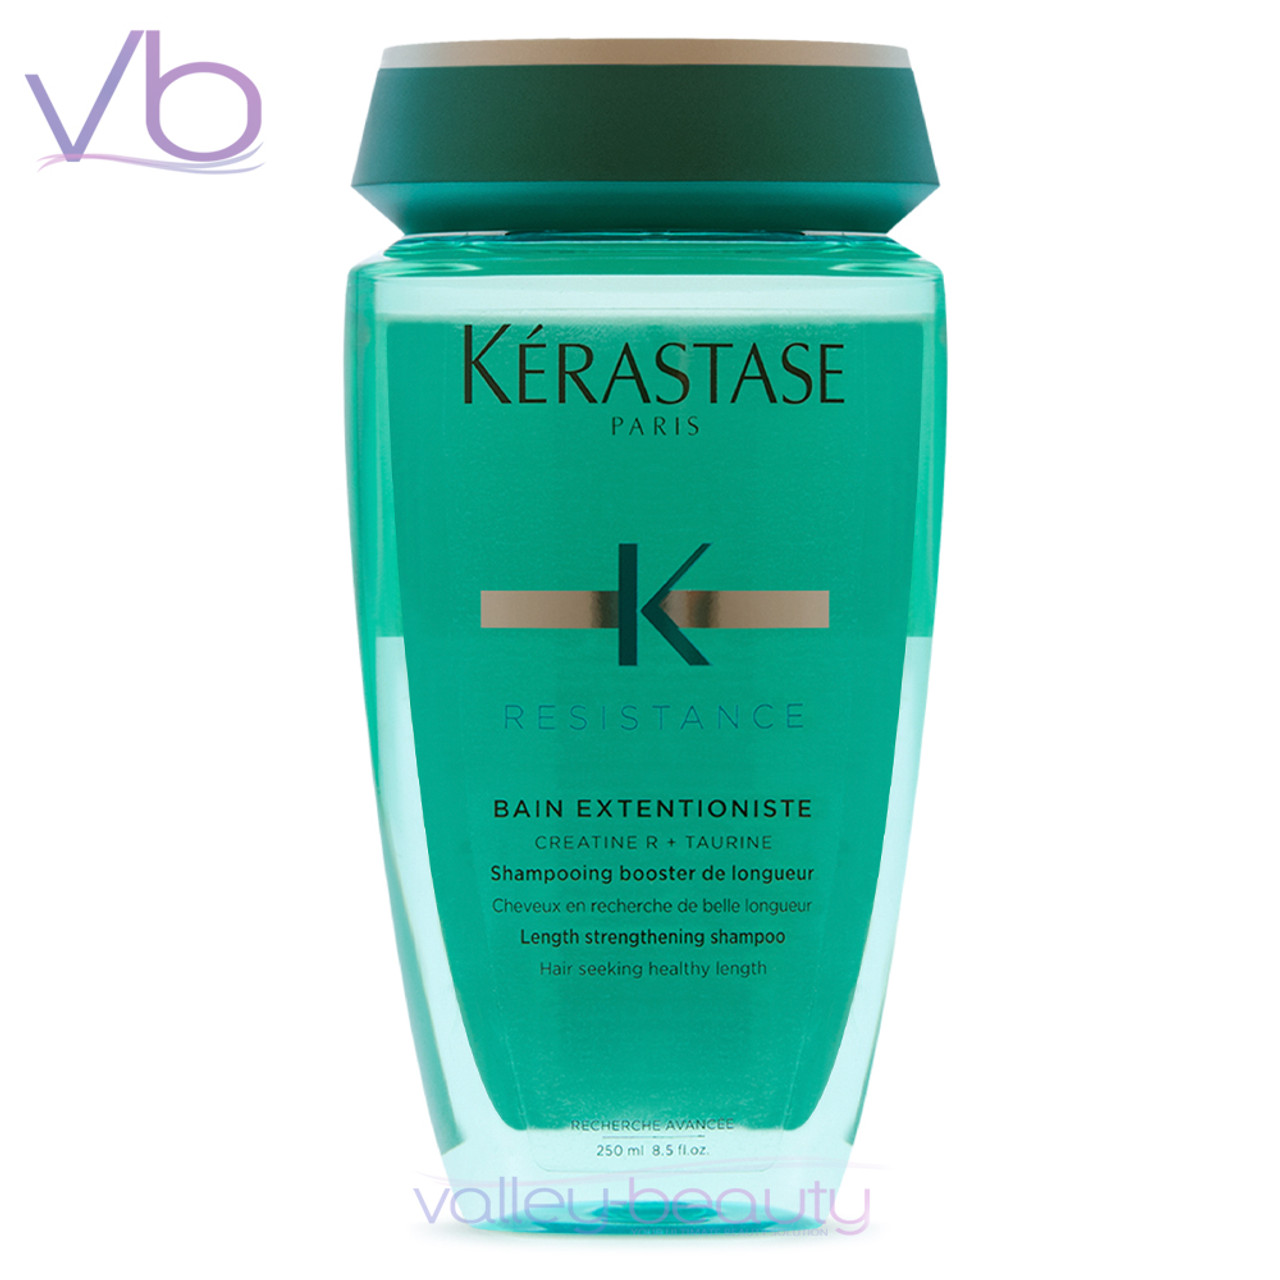 Kerastase Bain Extentioniste | Shampoo for Long Hair